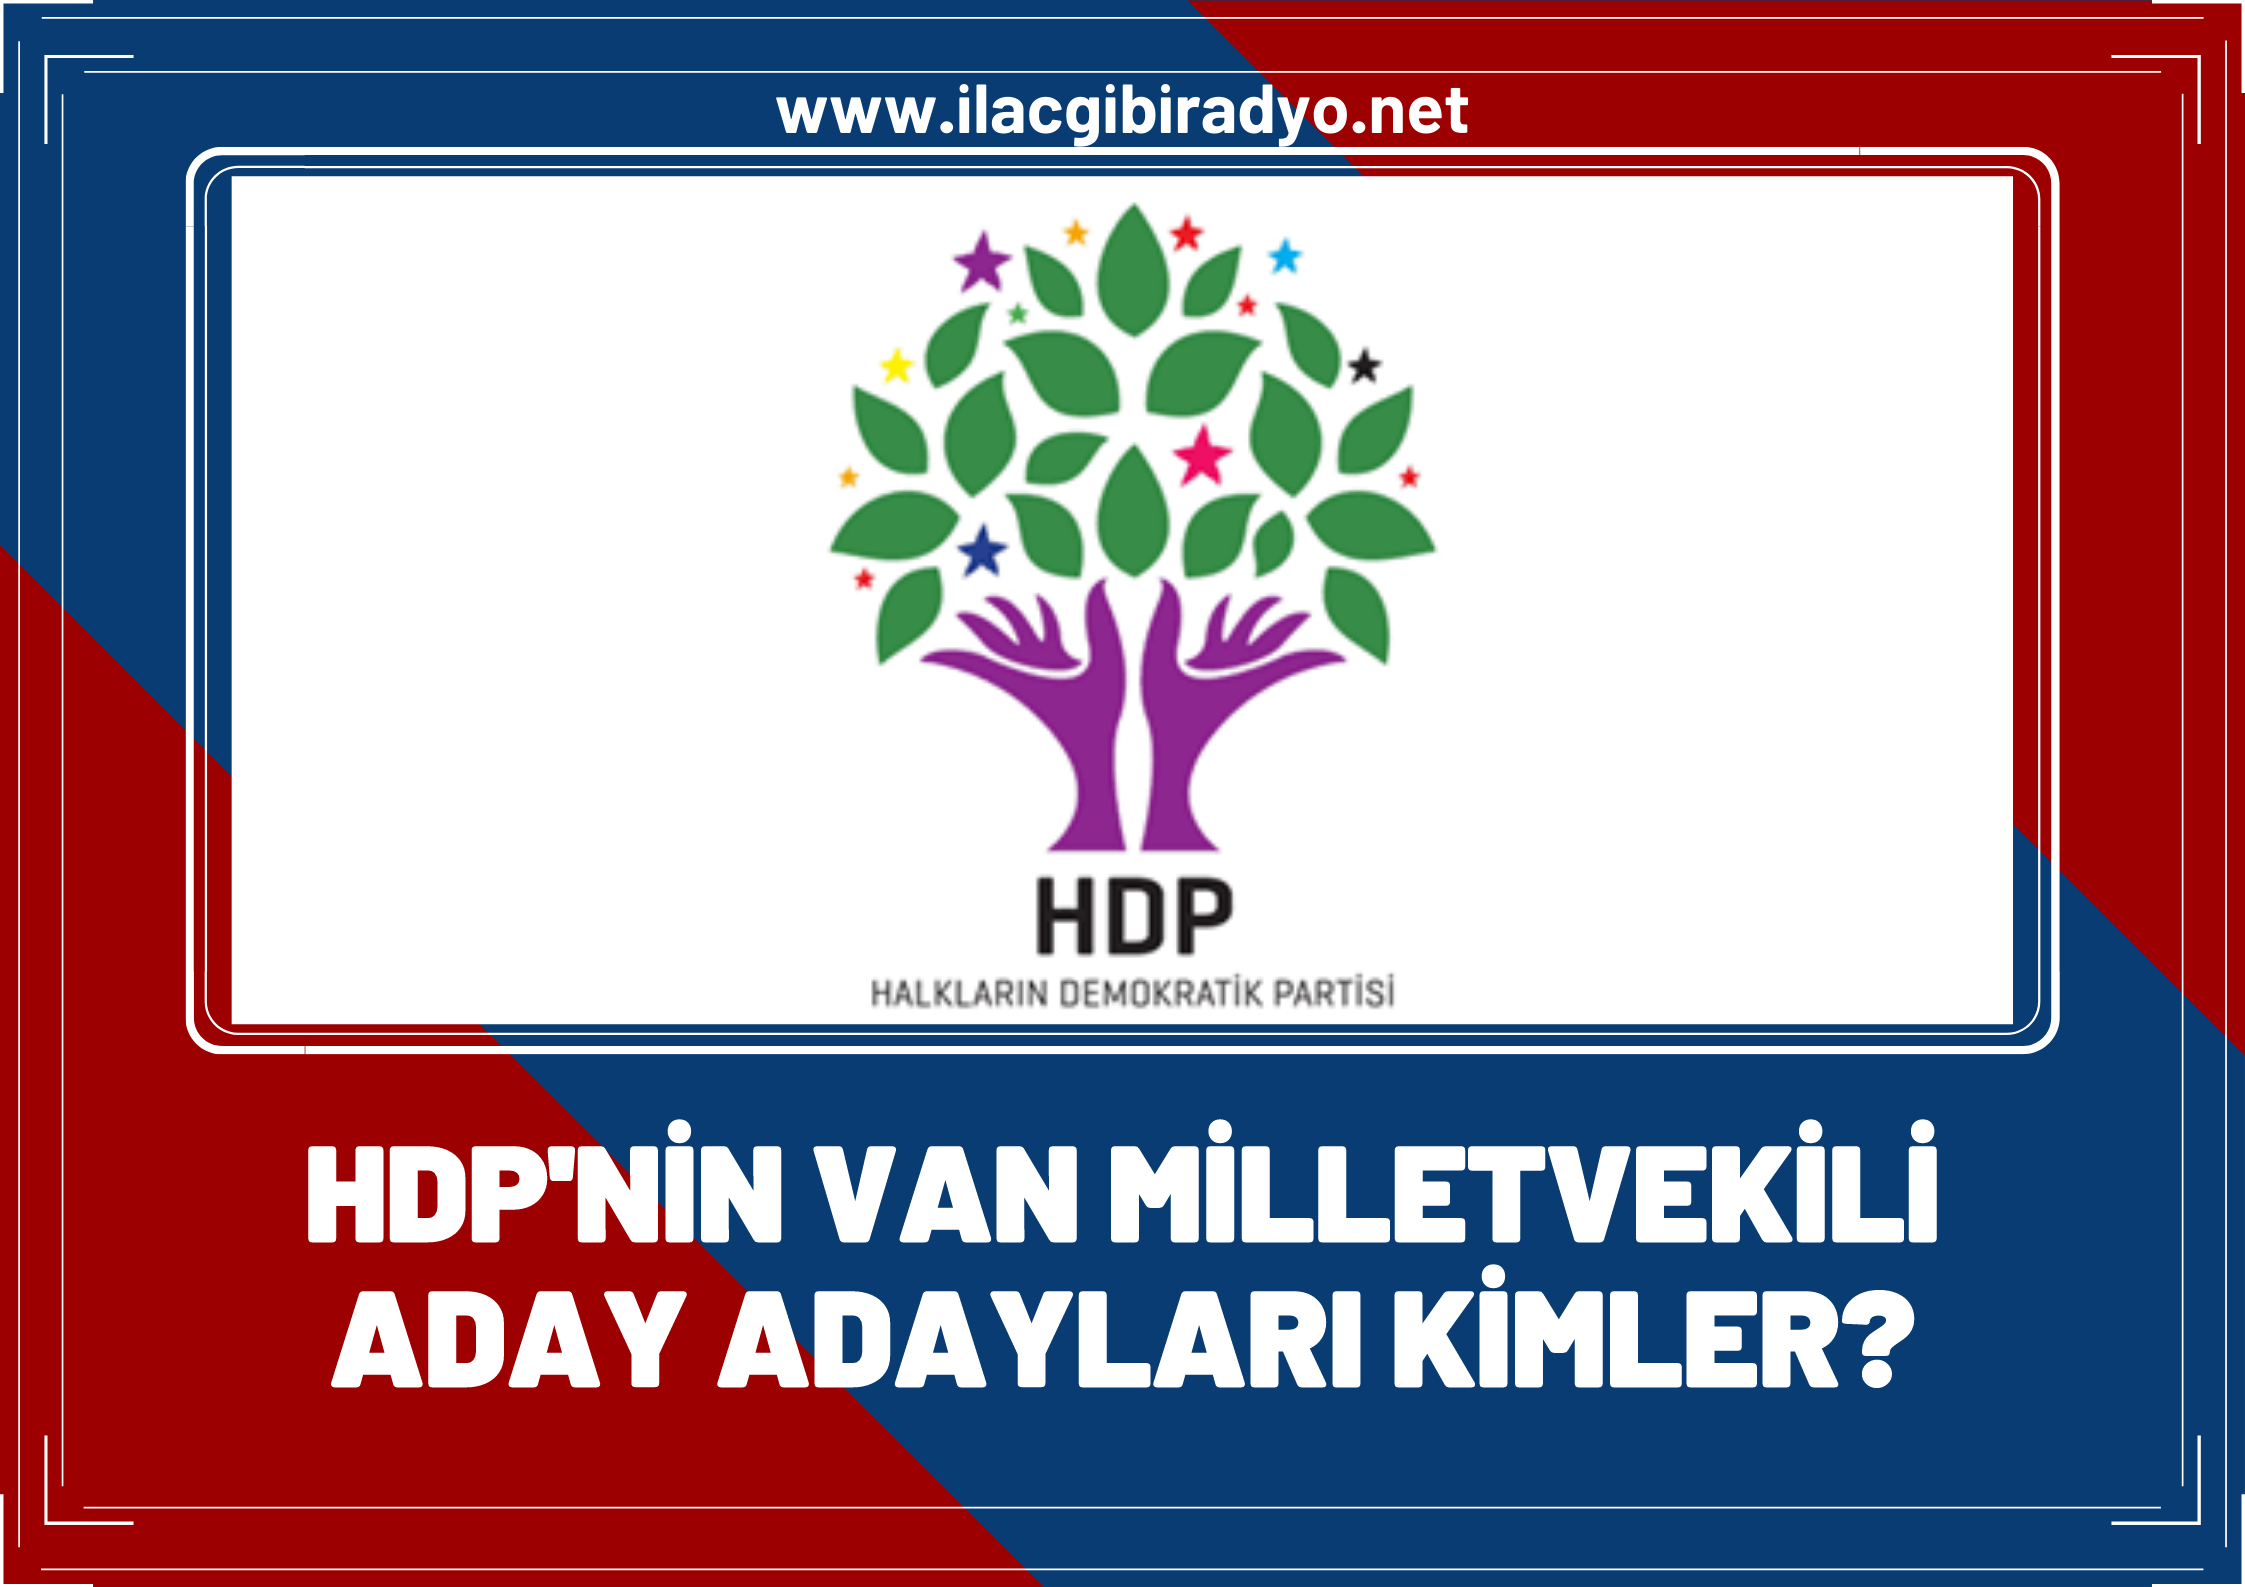 HDP’nin Van milletvekili aday adayları kimler? İşte HDP’nin Van milletvekili aday adayı listesi…